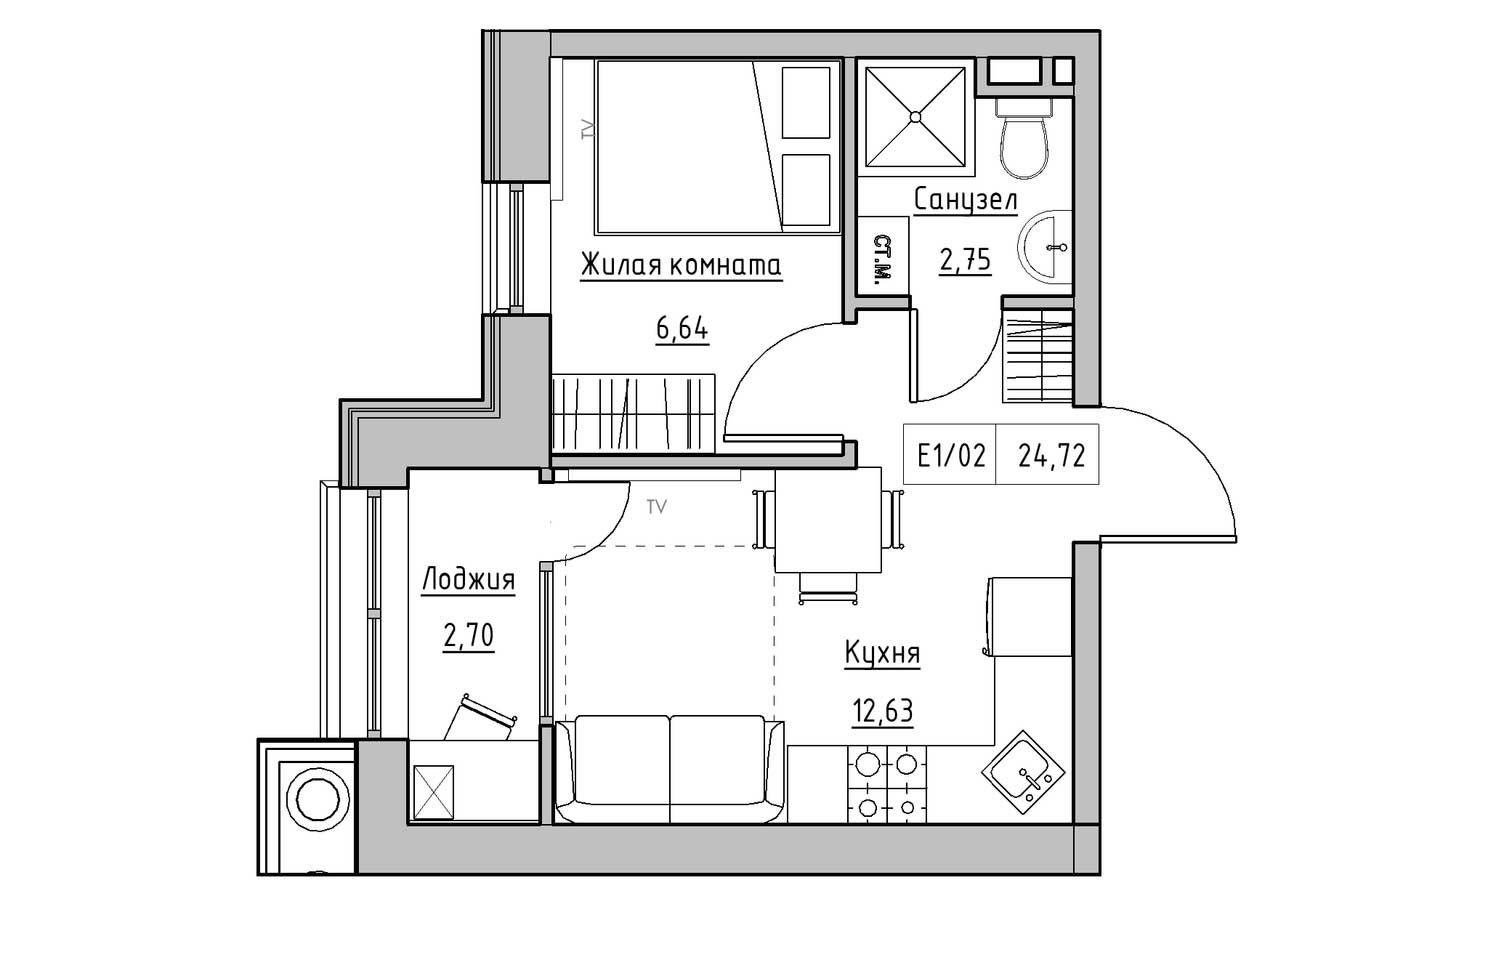 Планування 1-к квартира площею 24.72м2, KS-010-01/0013.